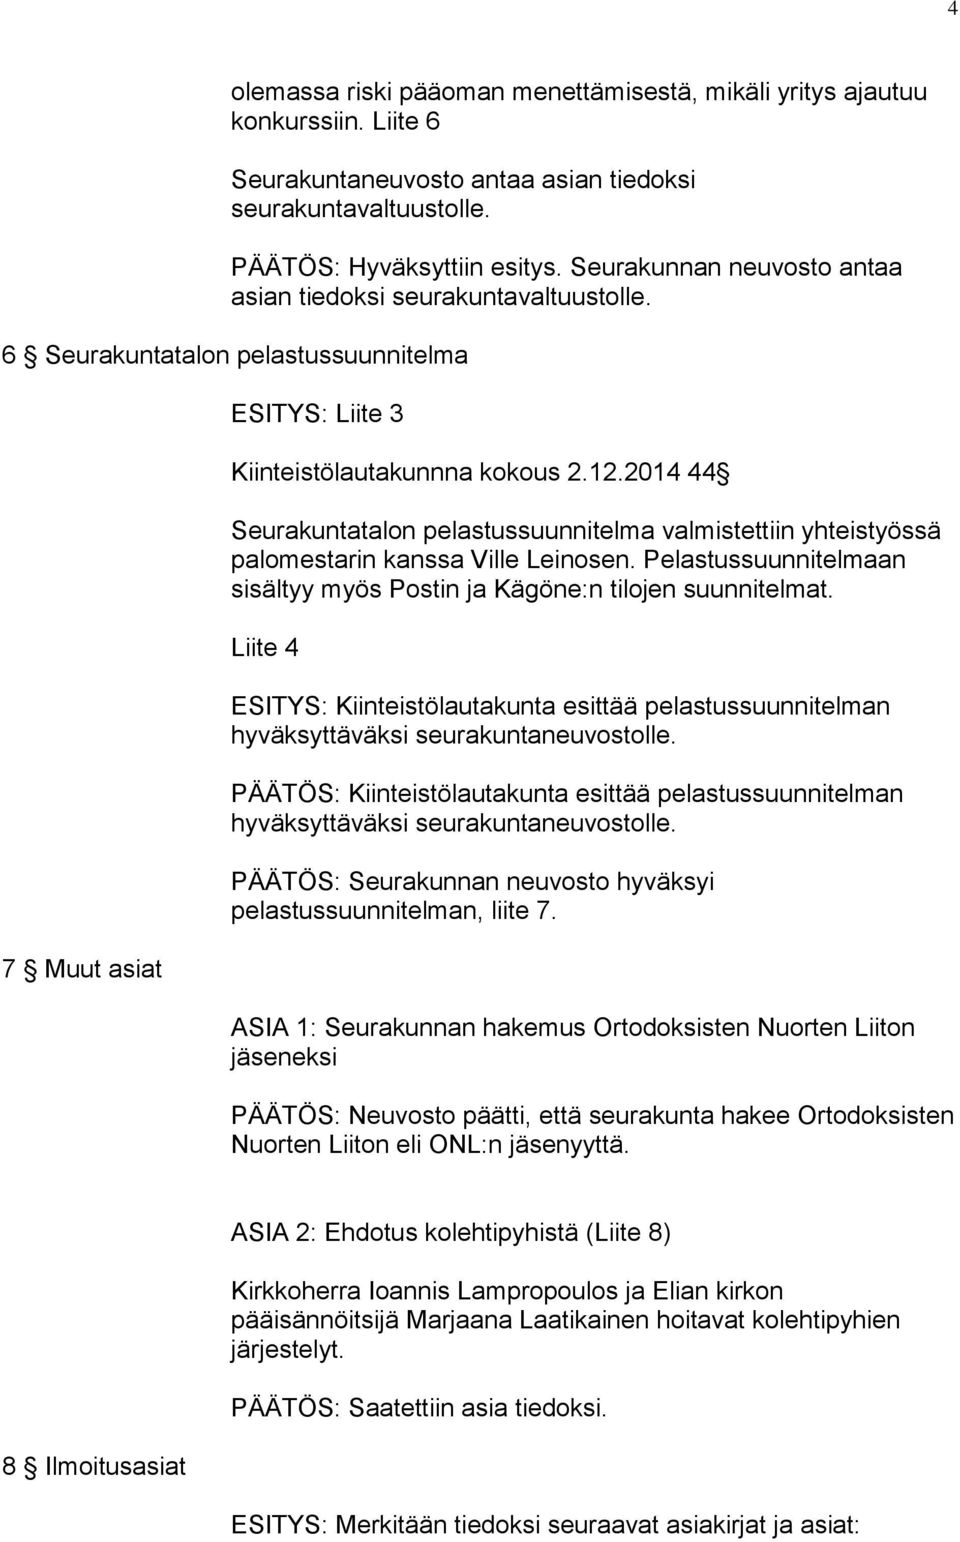 2014 44 Seurakuntatalon pelastussuunnitelma valmistettiin yhteistyössä palomestarin kanssa Ville Leinosen. Pelastussuunnitelmaan sisältyy myös Postin ja Kägöne:n tilojen suunnitelmat.